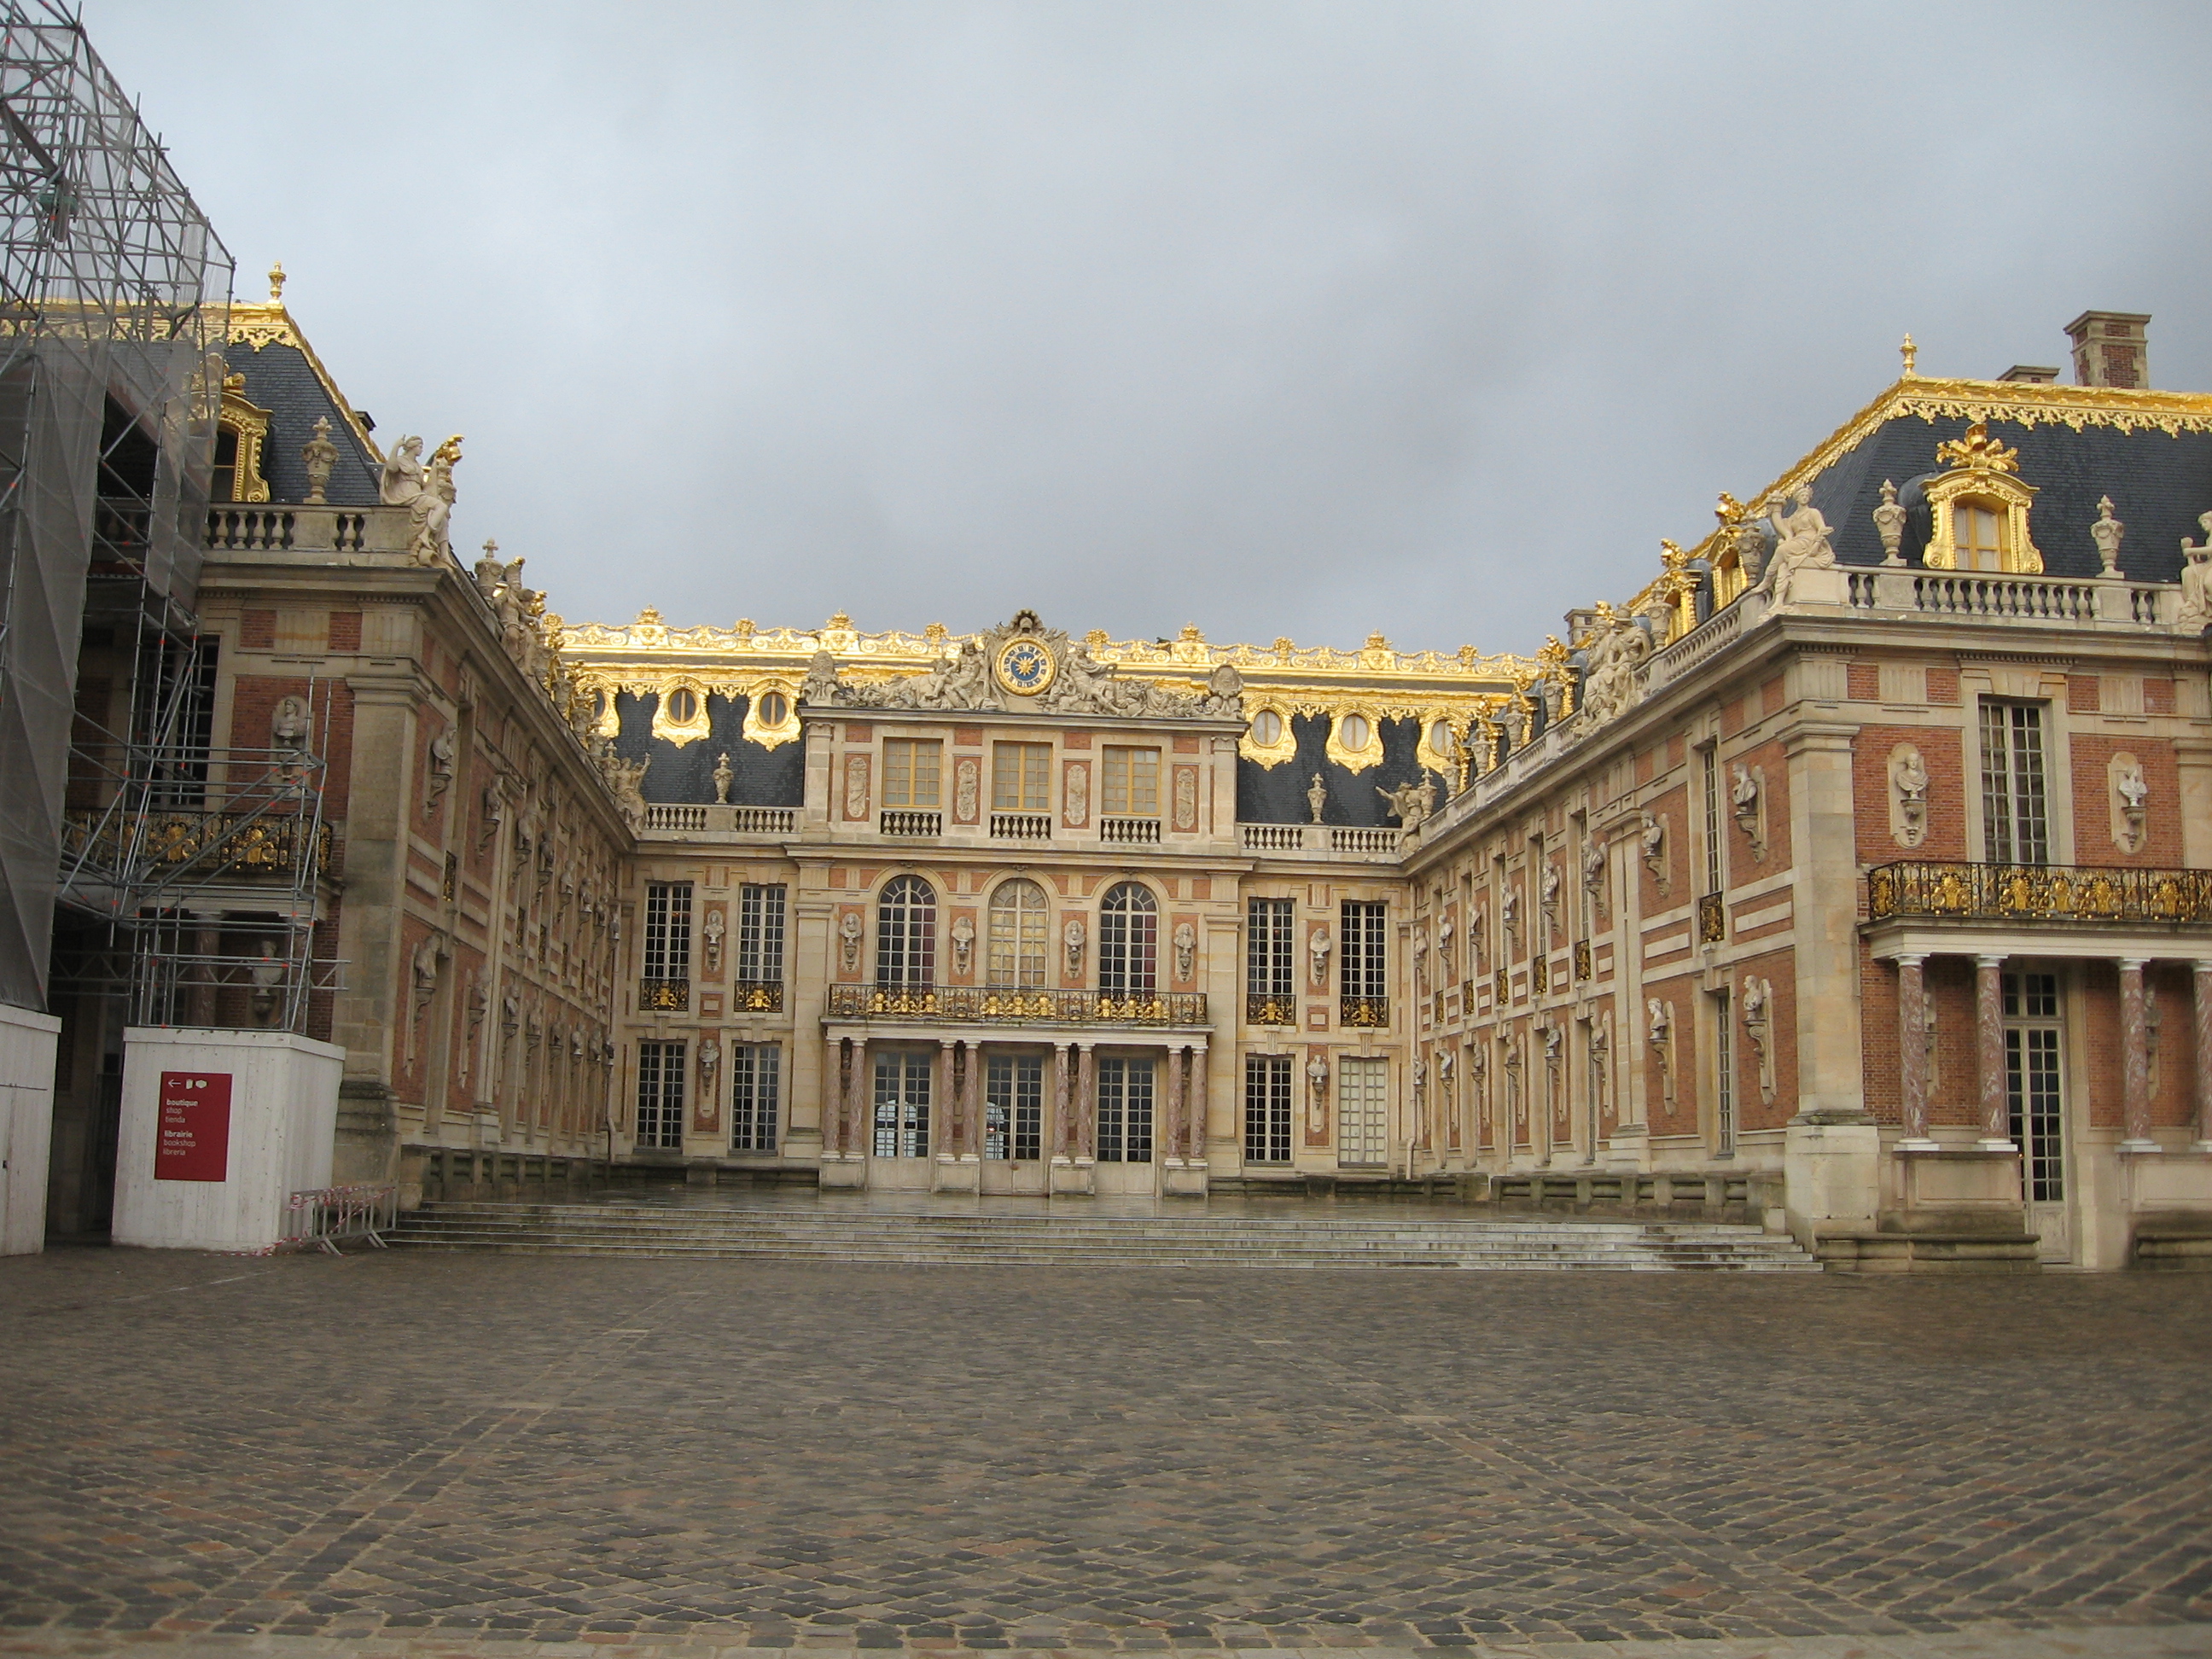 Viroflay 2010 - Bild 2 - Das Schloss von Versailles